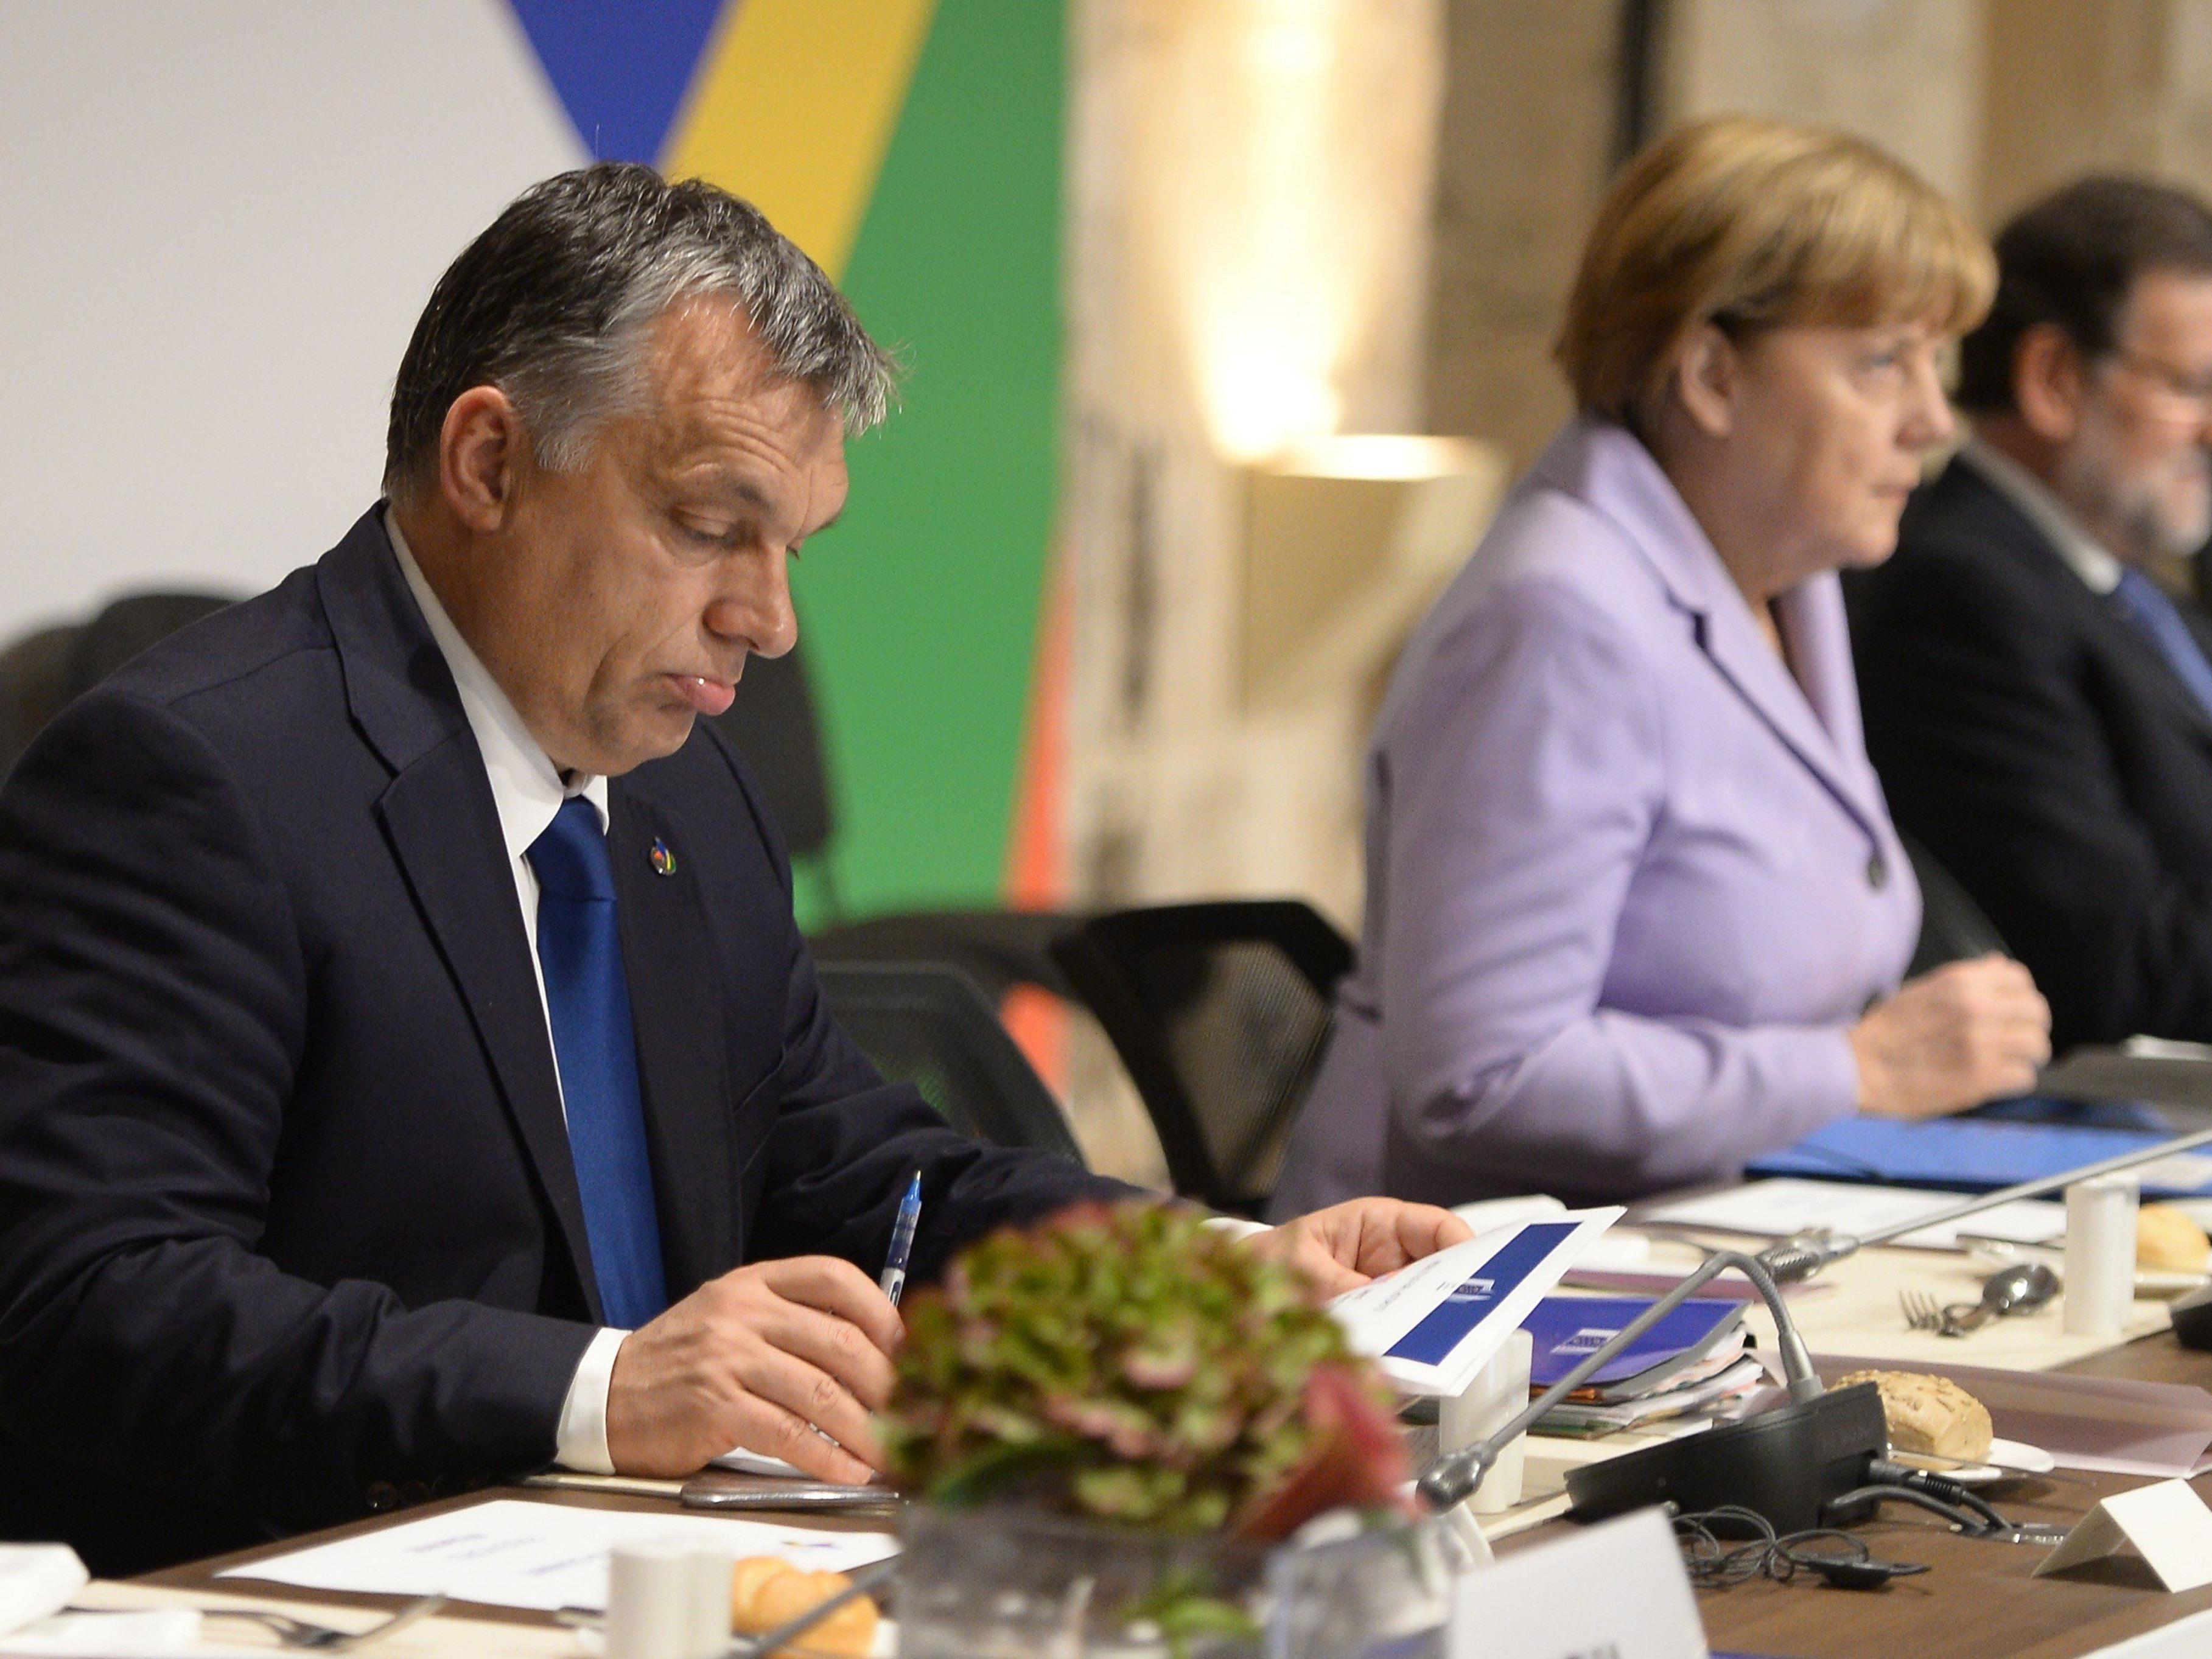 Orban berichtet von geheimen Plänen, nach denen eine halbe Million Syrer in der EU verteilt werden sollen.